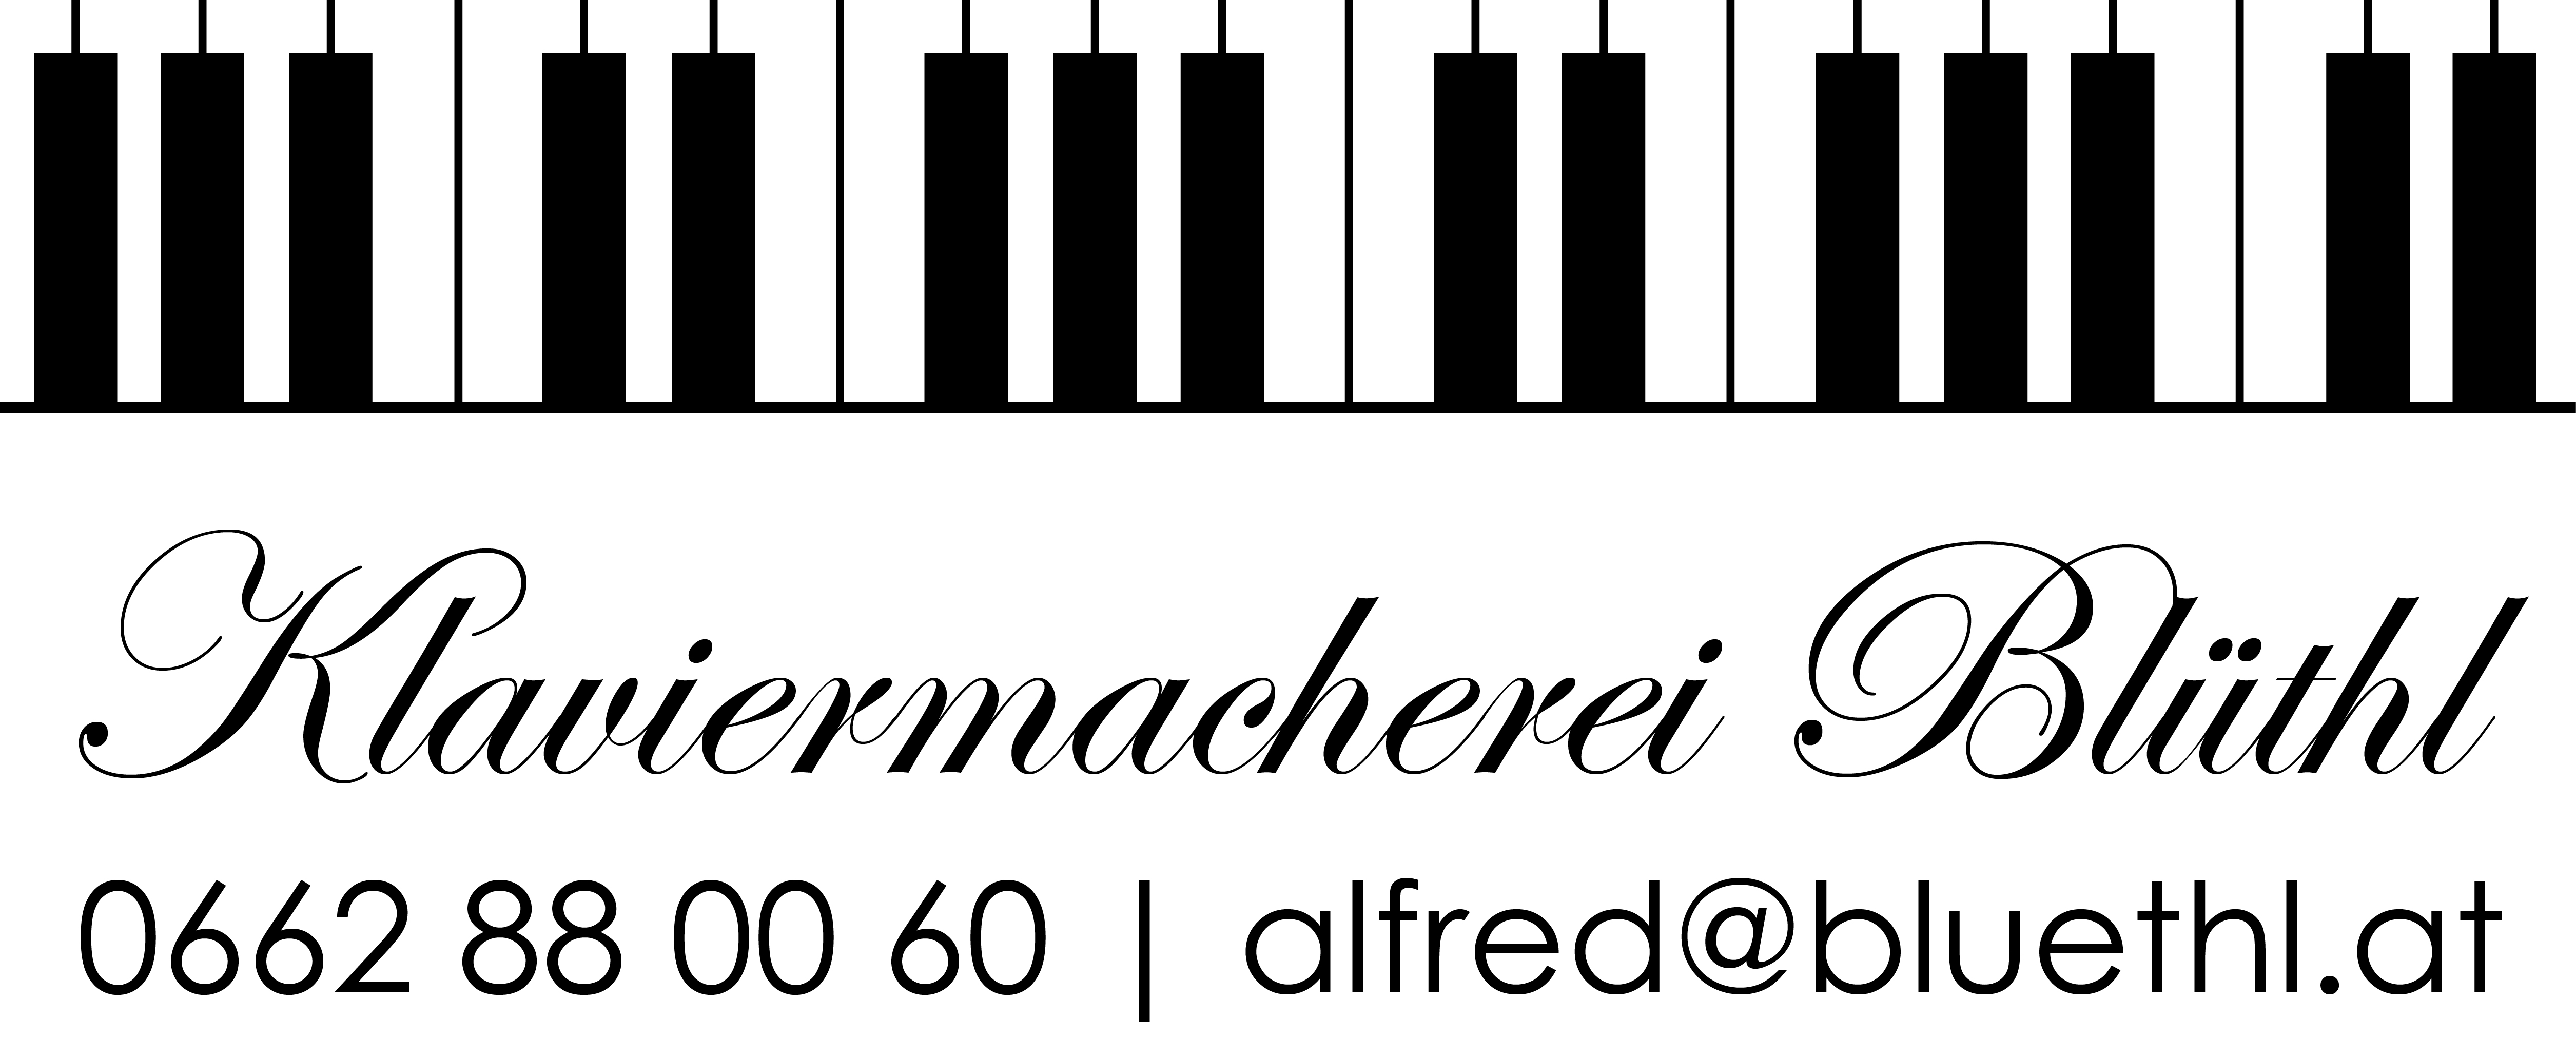 Klaviermacherei Alfred Blüthl